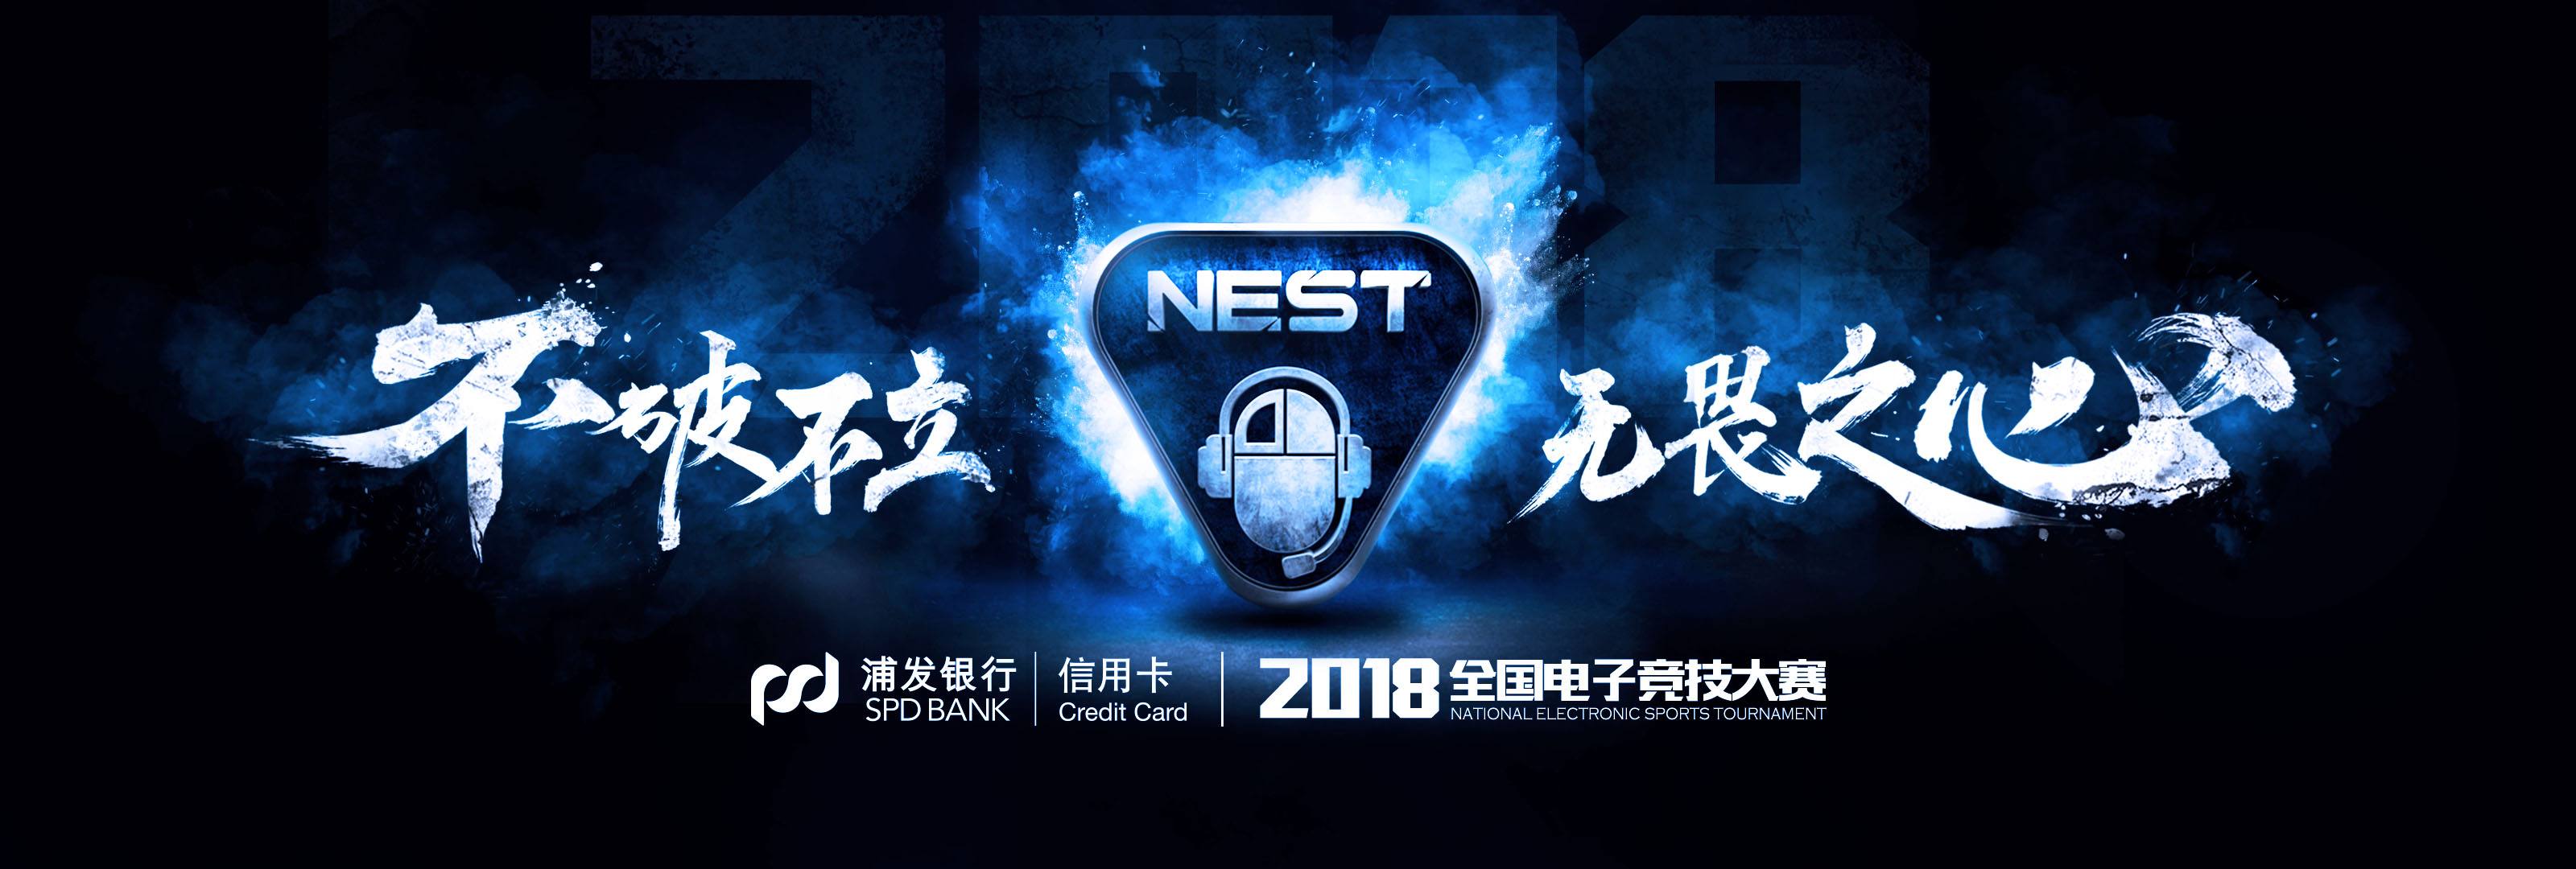 NEST2018《王者荣耀》线上赛 App Store 充值